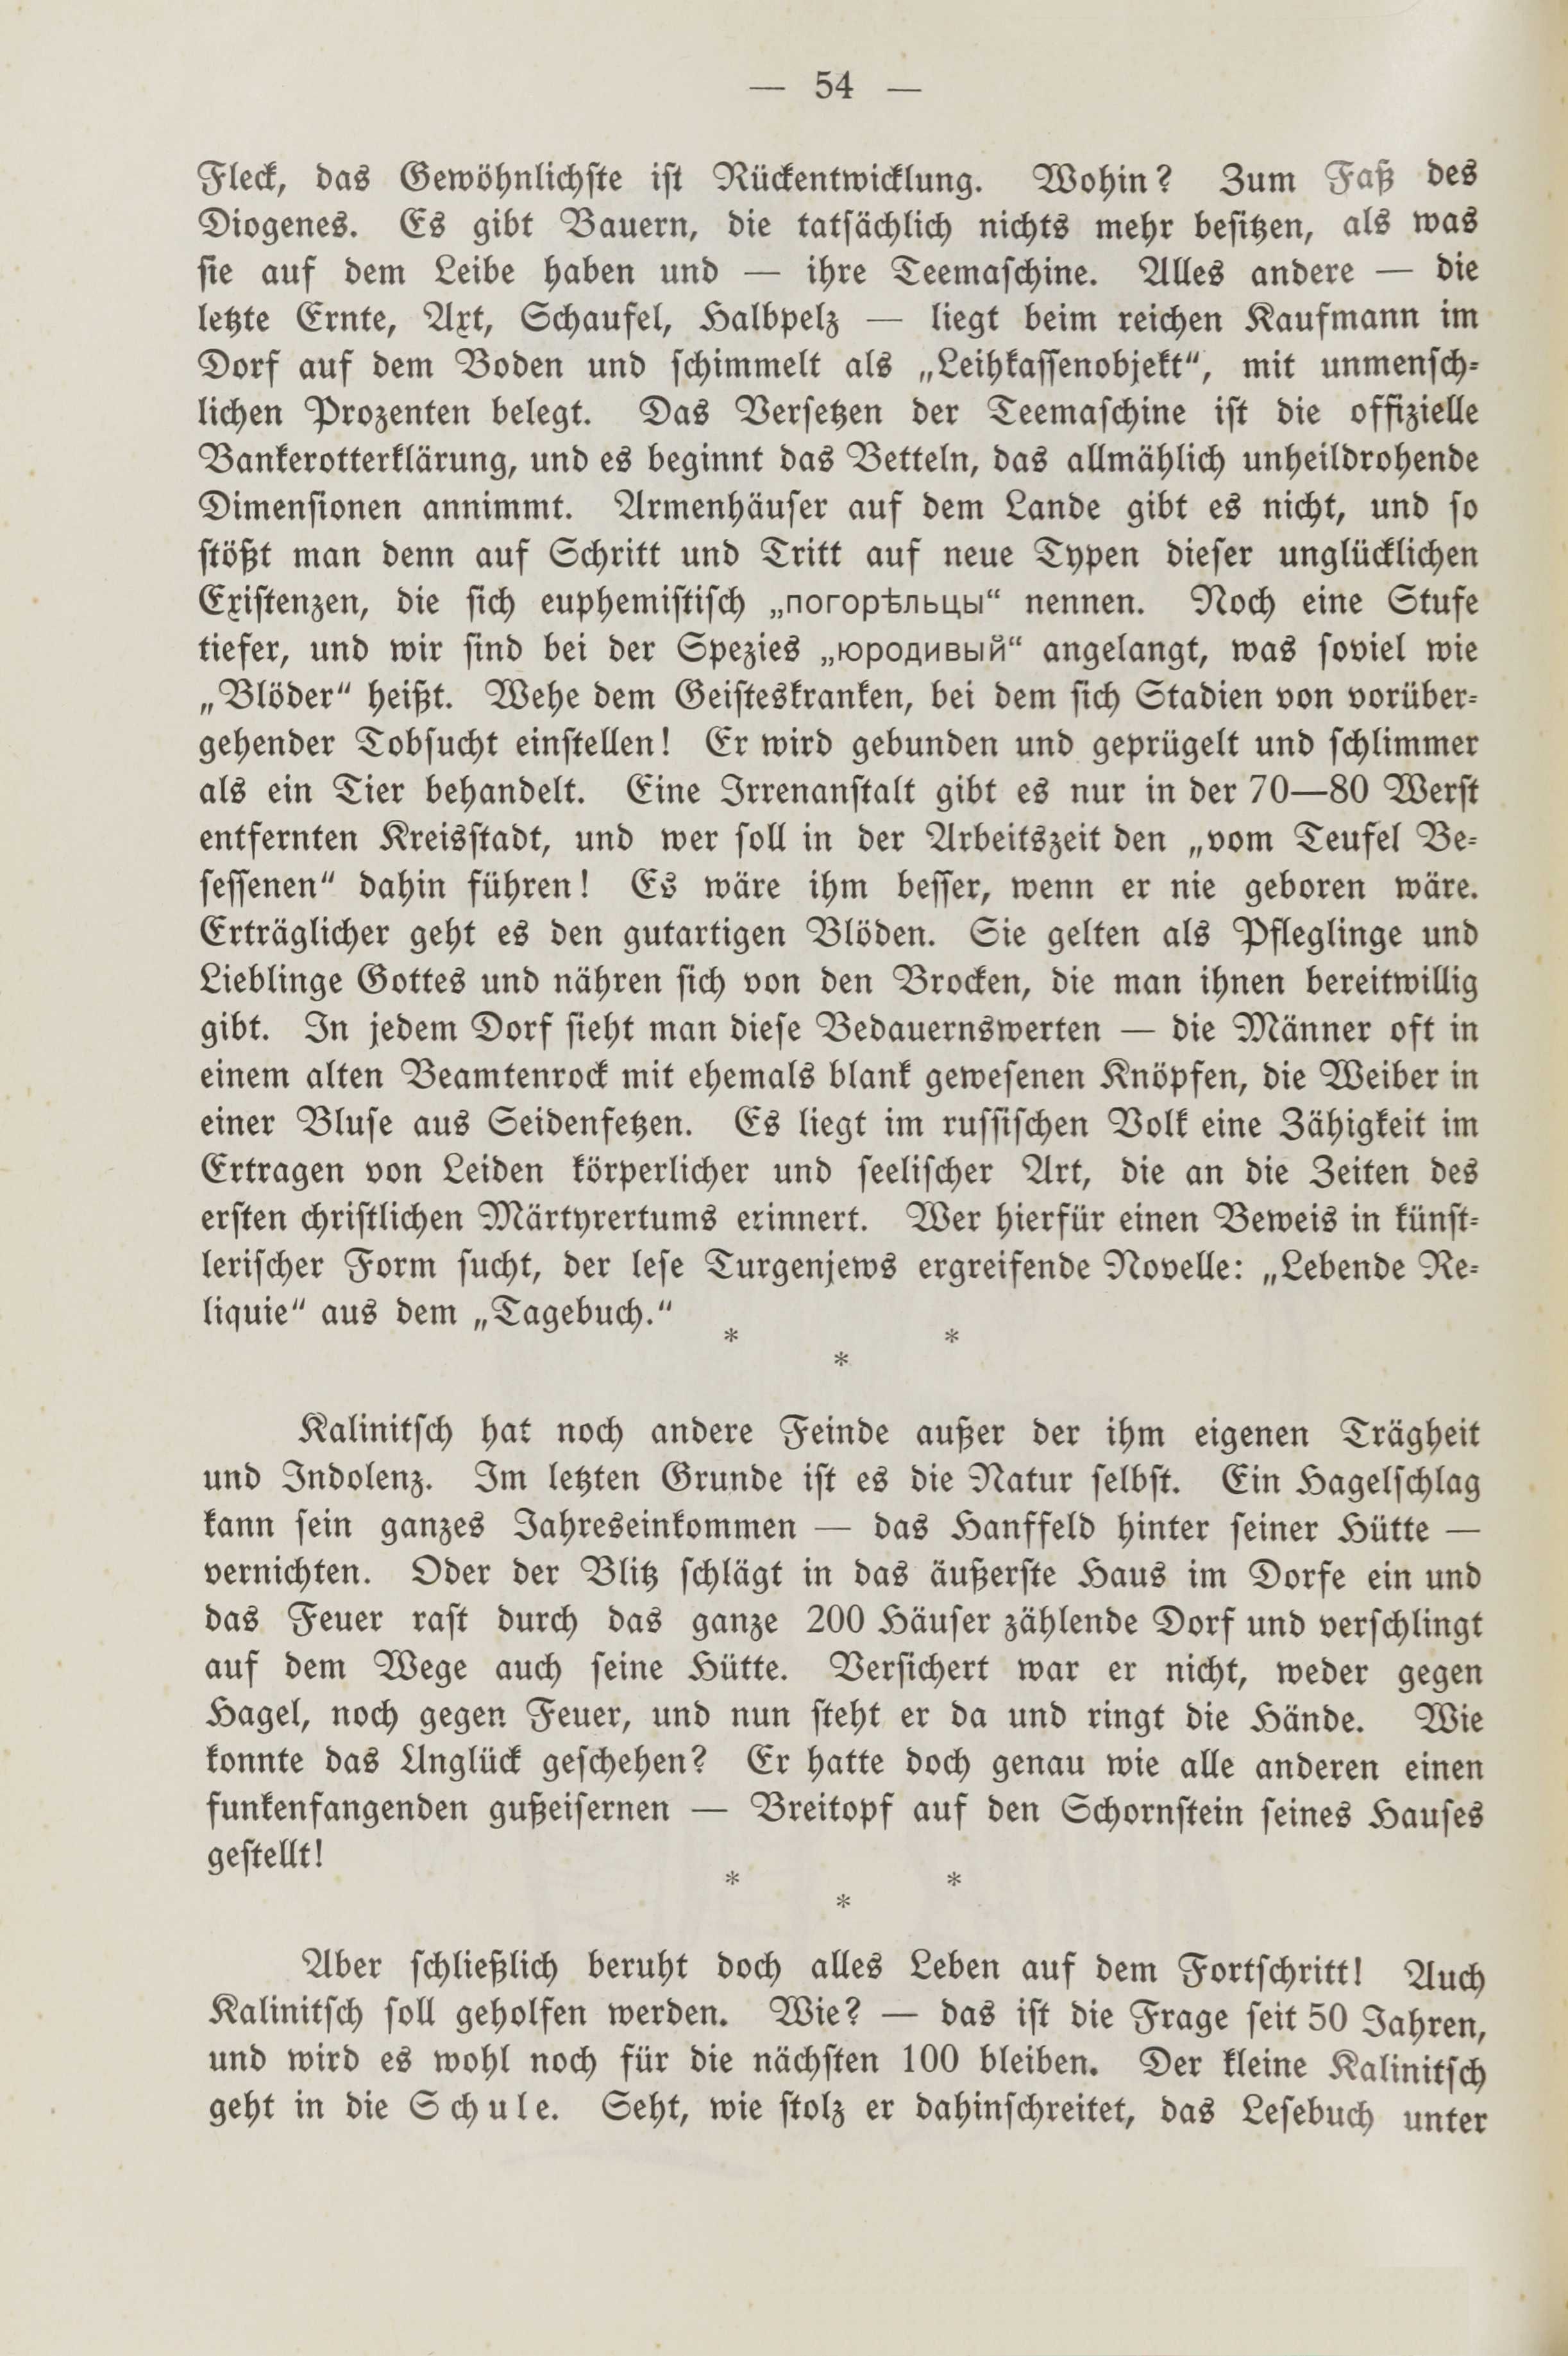 Deutsche Monatsschrift für Russland [2] (1913) | 58. (54) Main body of text